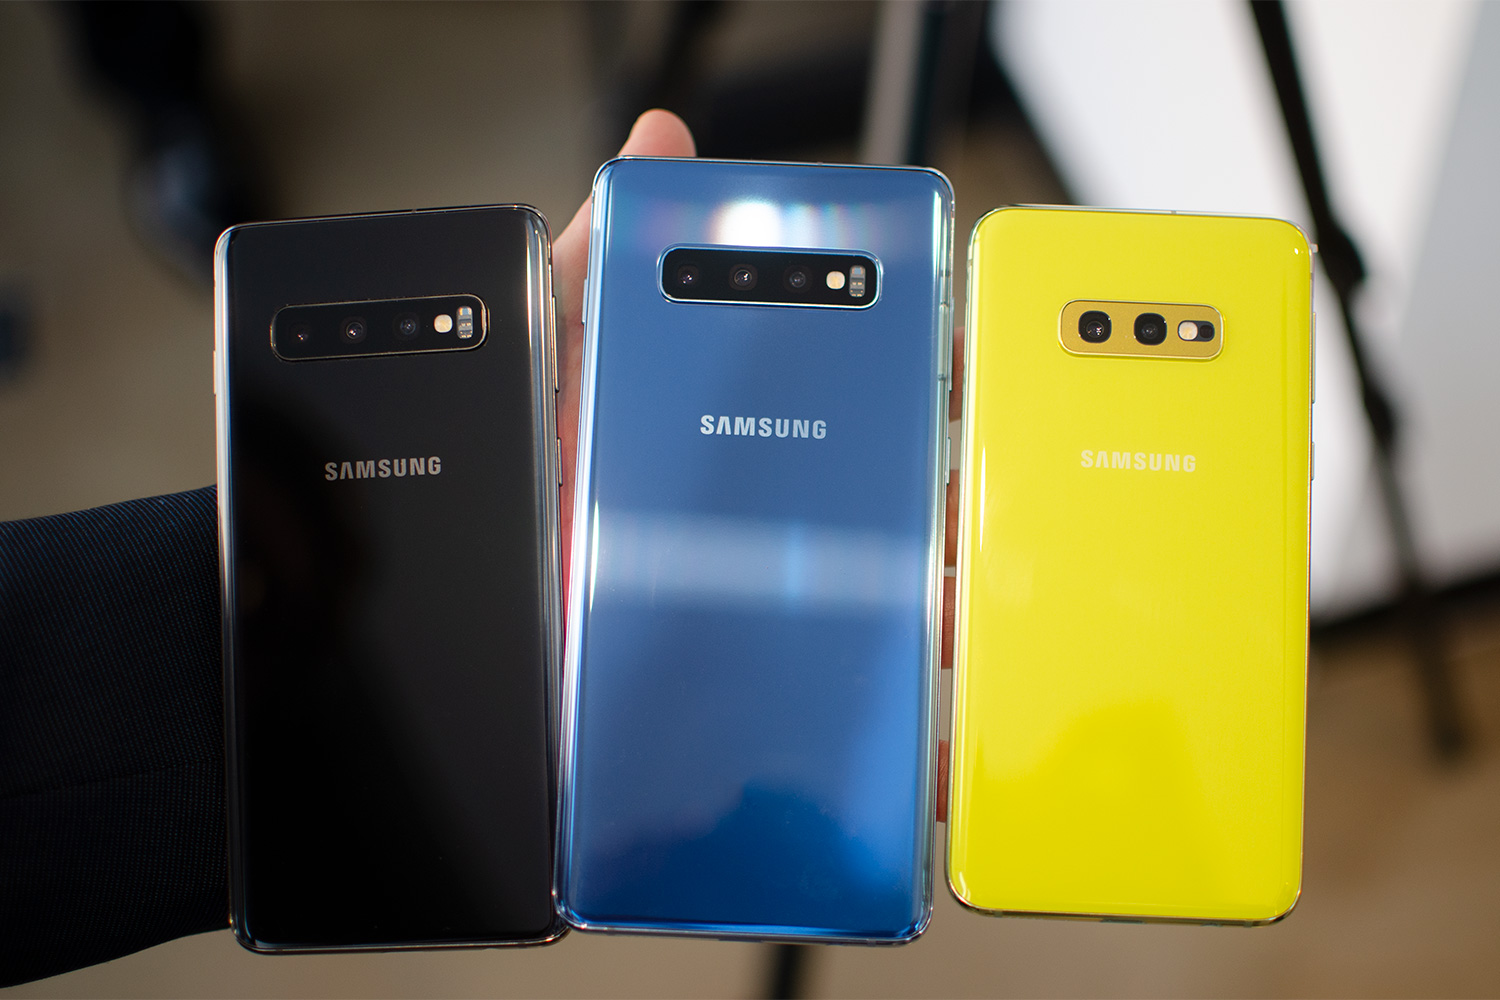 Samsung Galaxy S10 Vs. S10 Plus Vs. S10e Vs. S10 5G